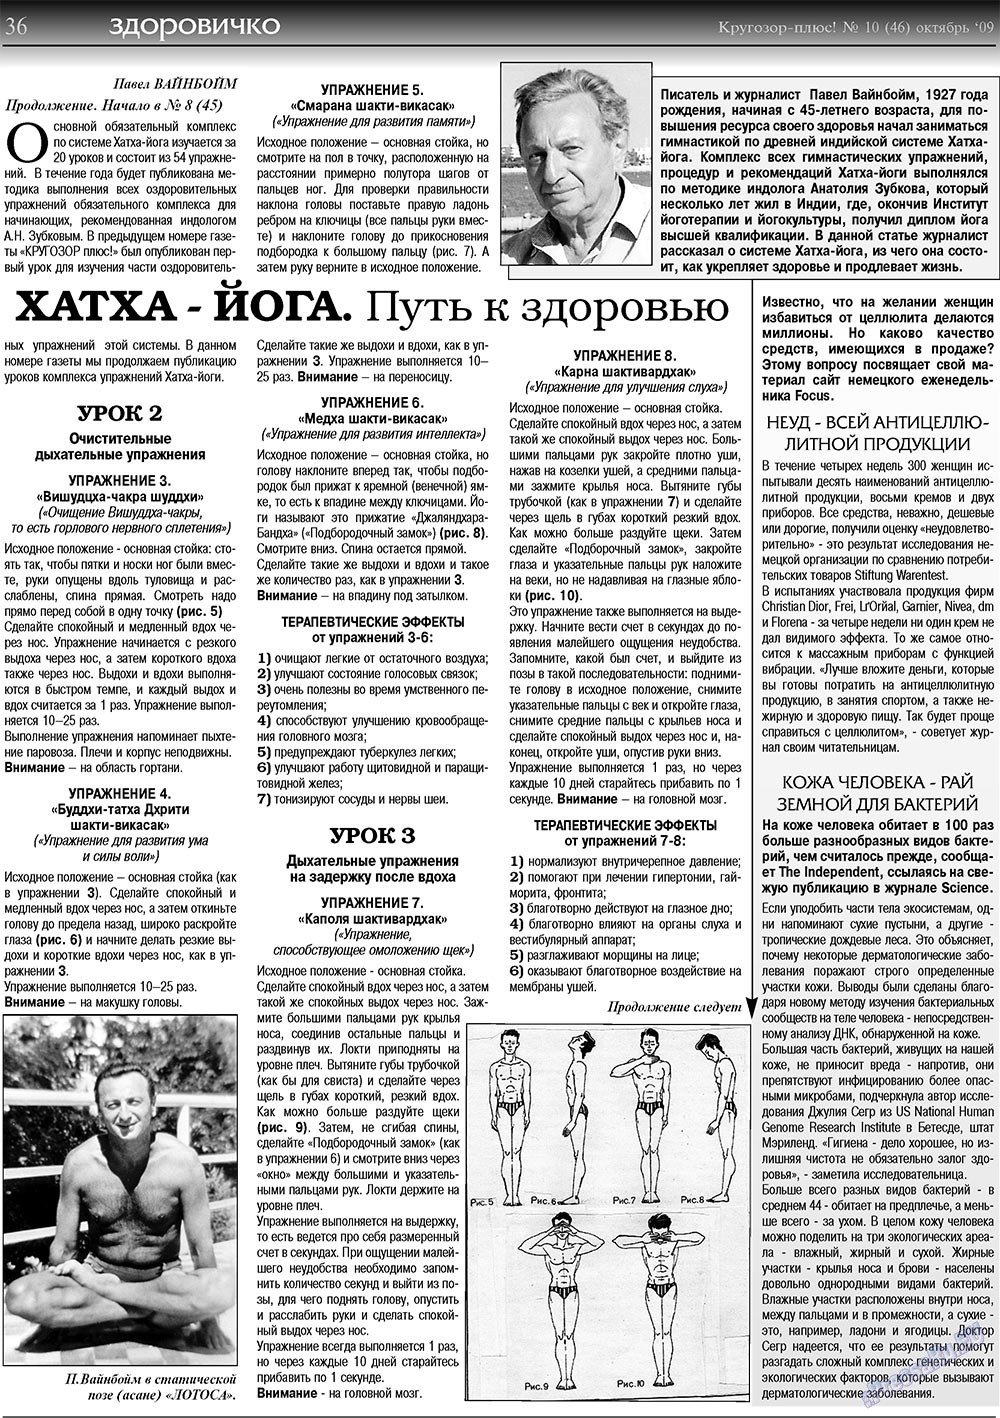 Кругозор плюс!, газета. 2009 №10 стр.36